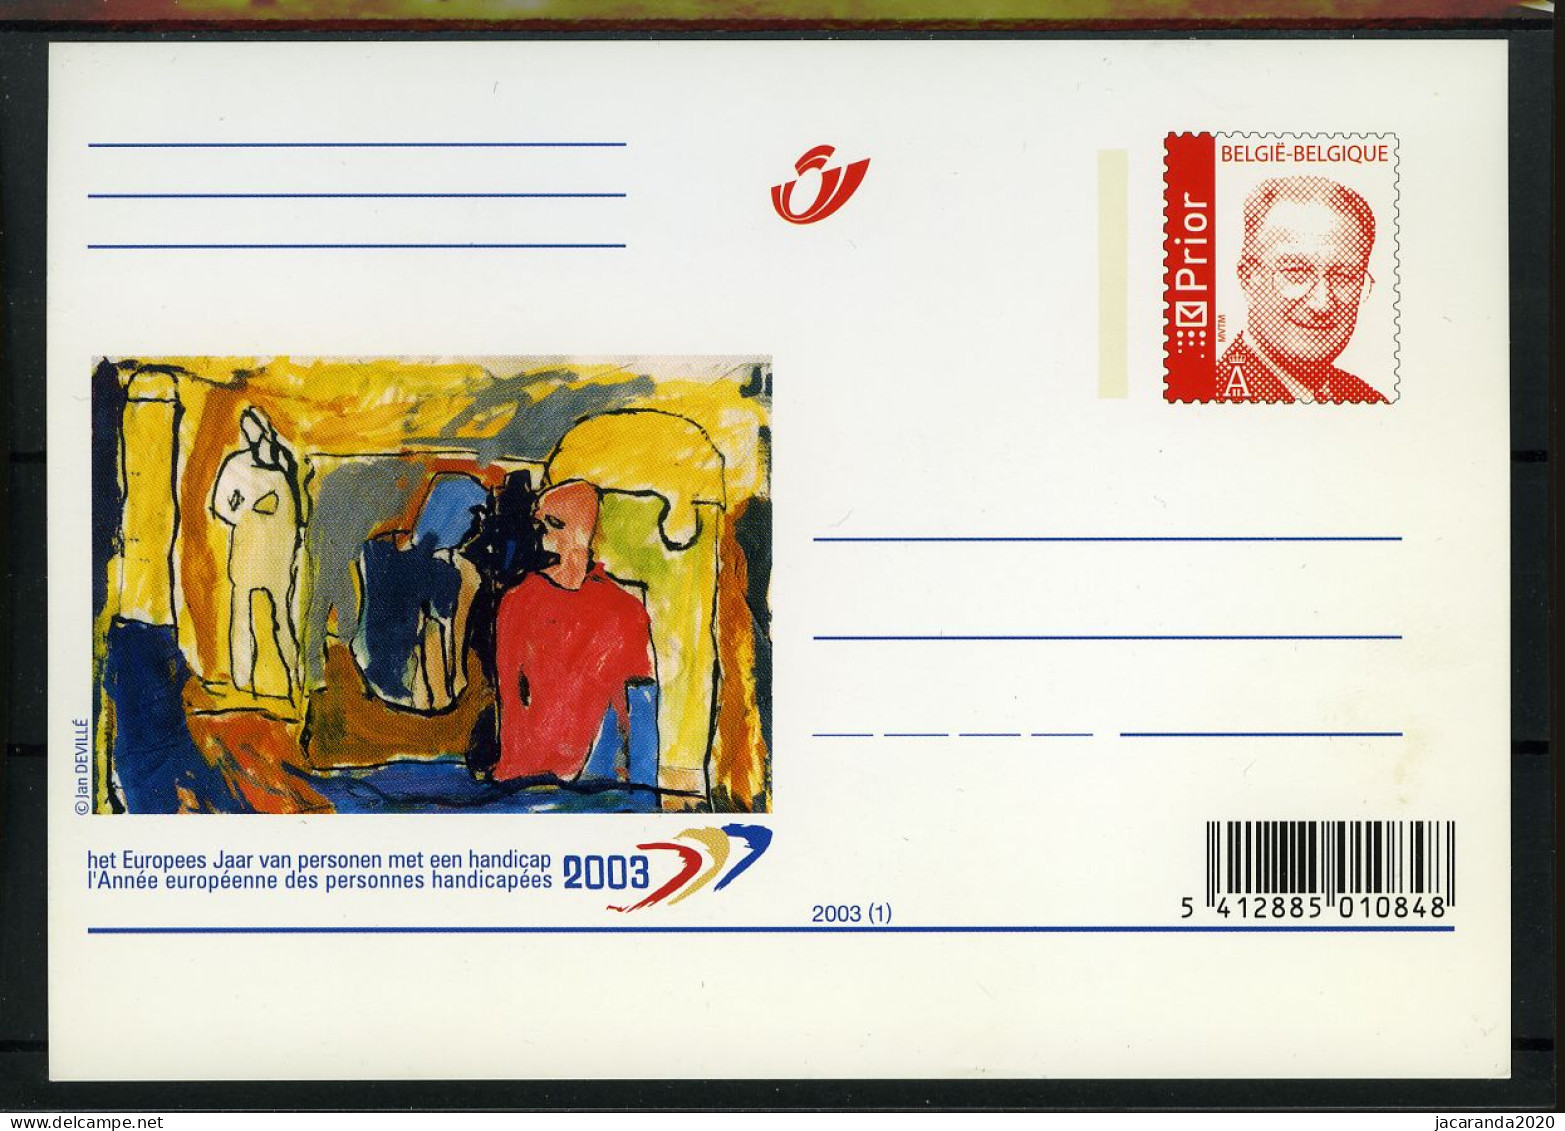 2003 - Europees Jaar Van Personen Met Een Handicap - Année Européenne Des Personnes Handicapées - BK86 - Cartes Postales Illustrées (1971-2014) [BK]